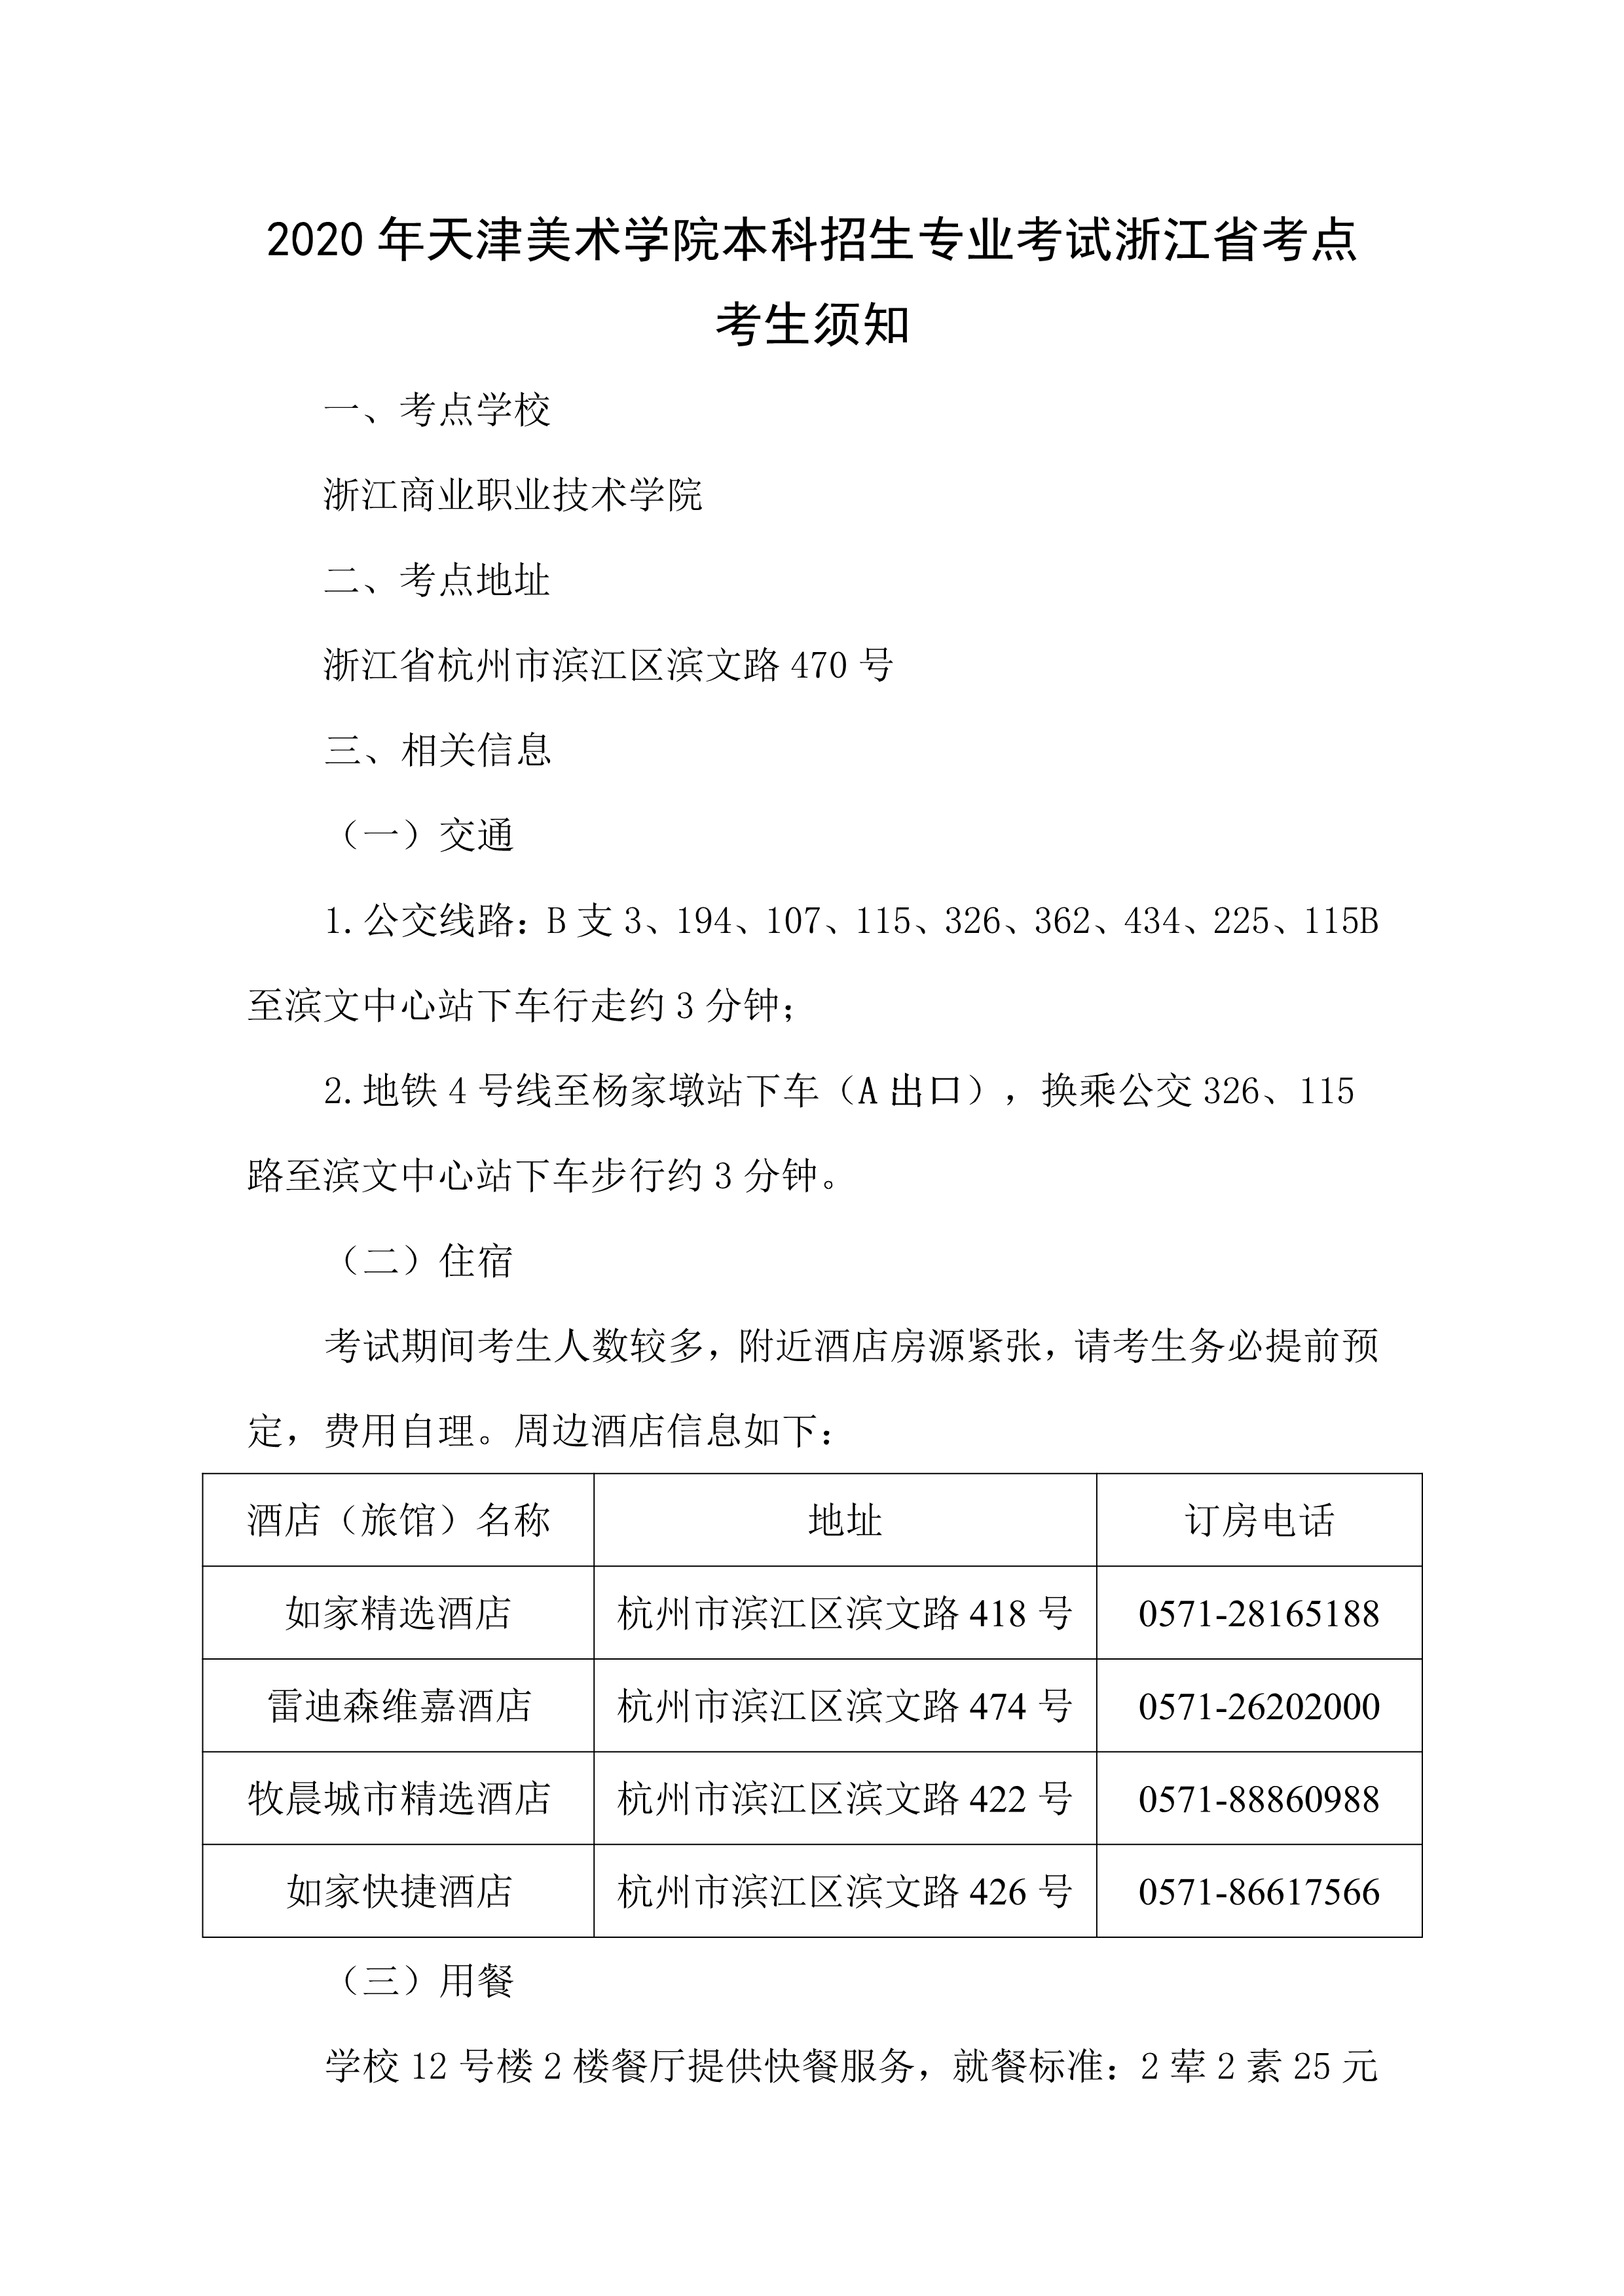 天津美术学院2020年本科招生专业考试考生须知及防疫要求（杭州考点）_1.png